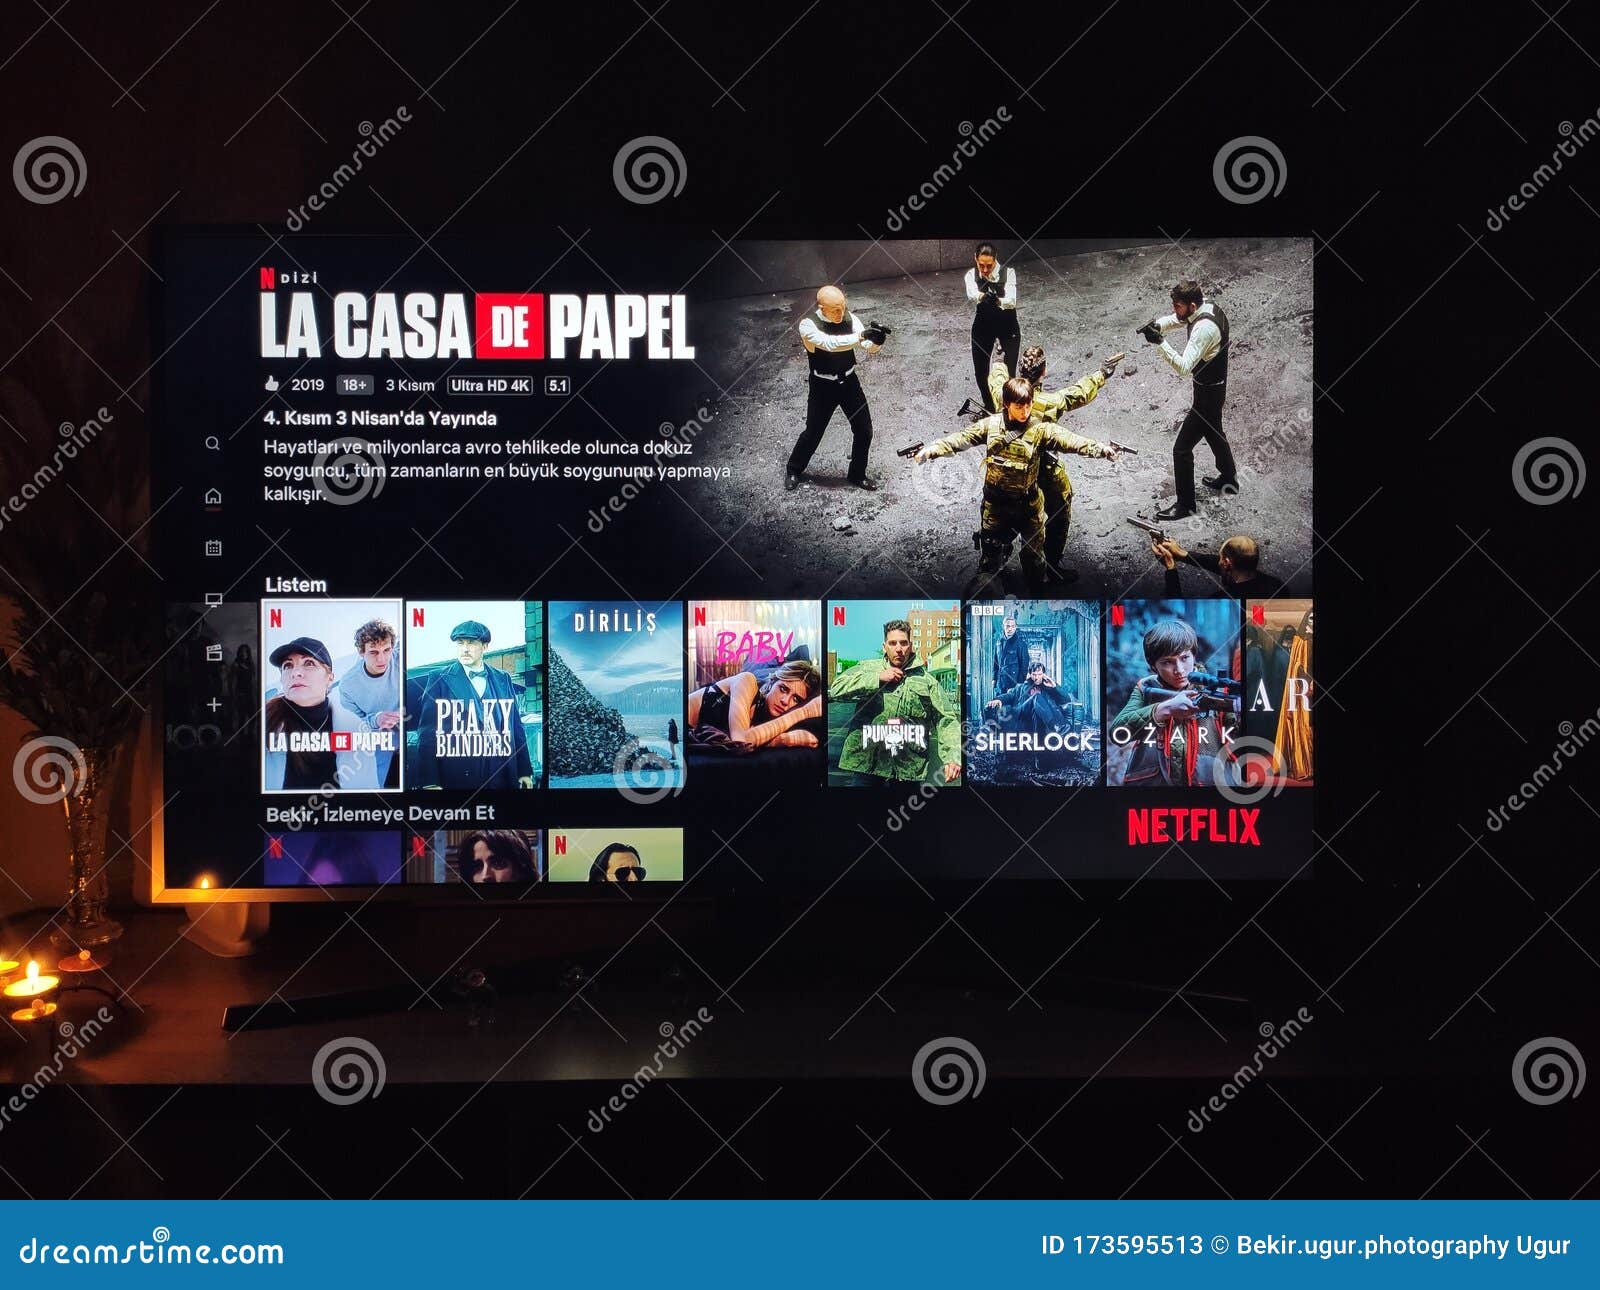 Free Netflix Account  Netflix brasil, La casa de papel